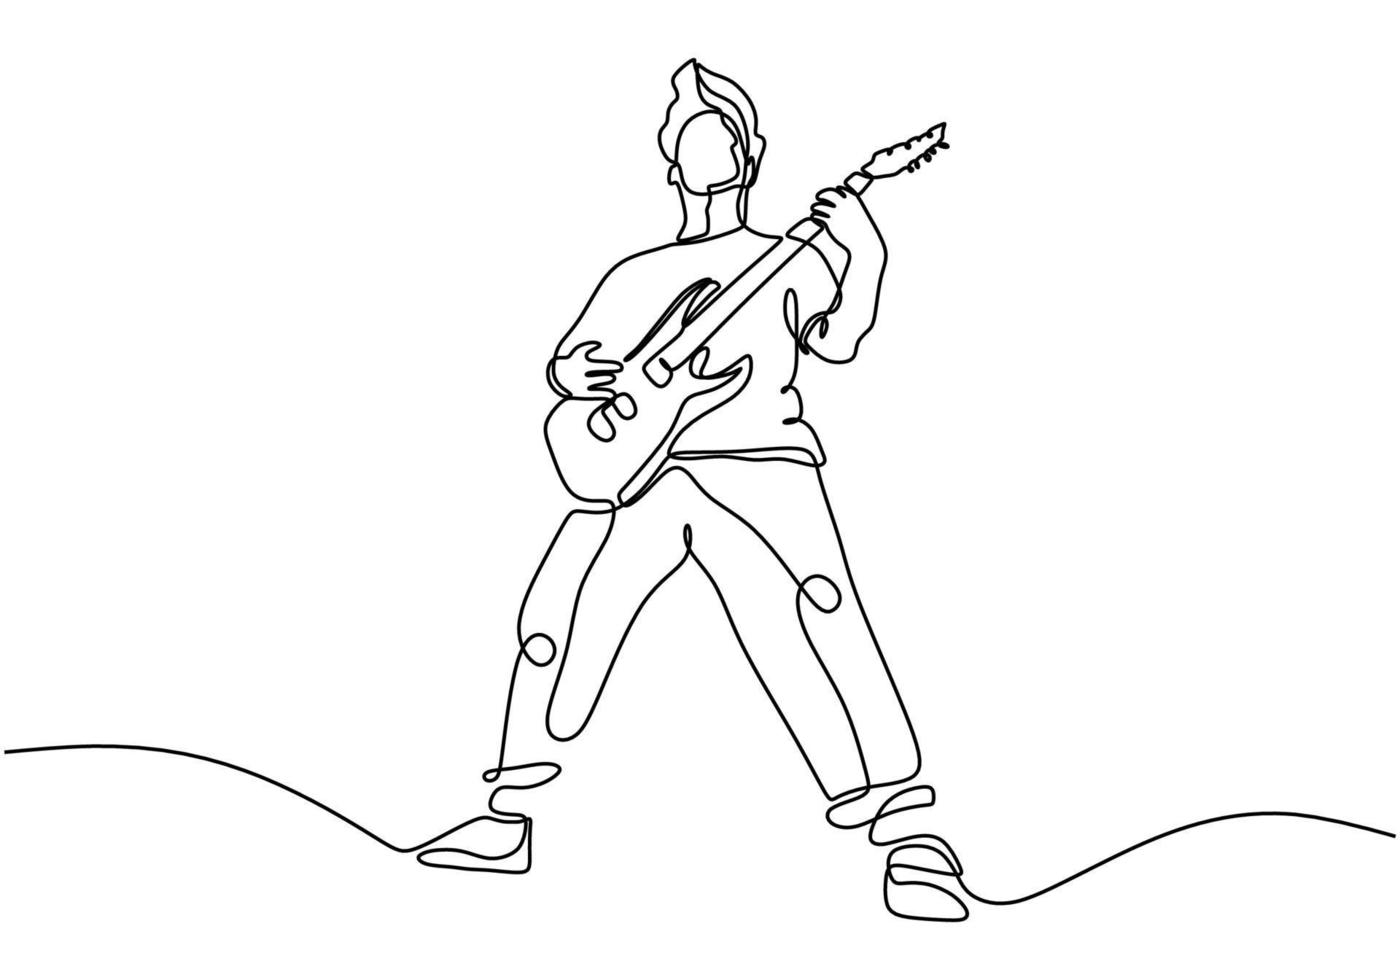 desenho de linha contínua de um homem tocando violão. vetor